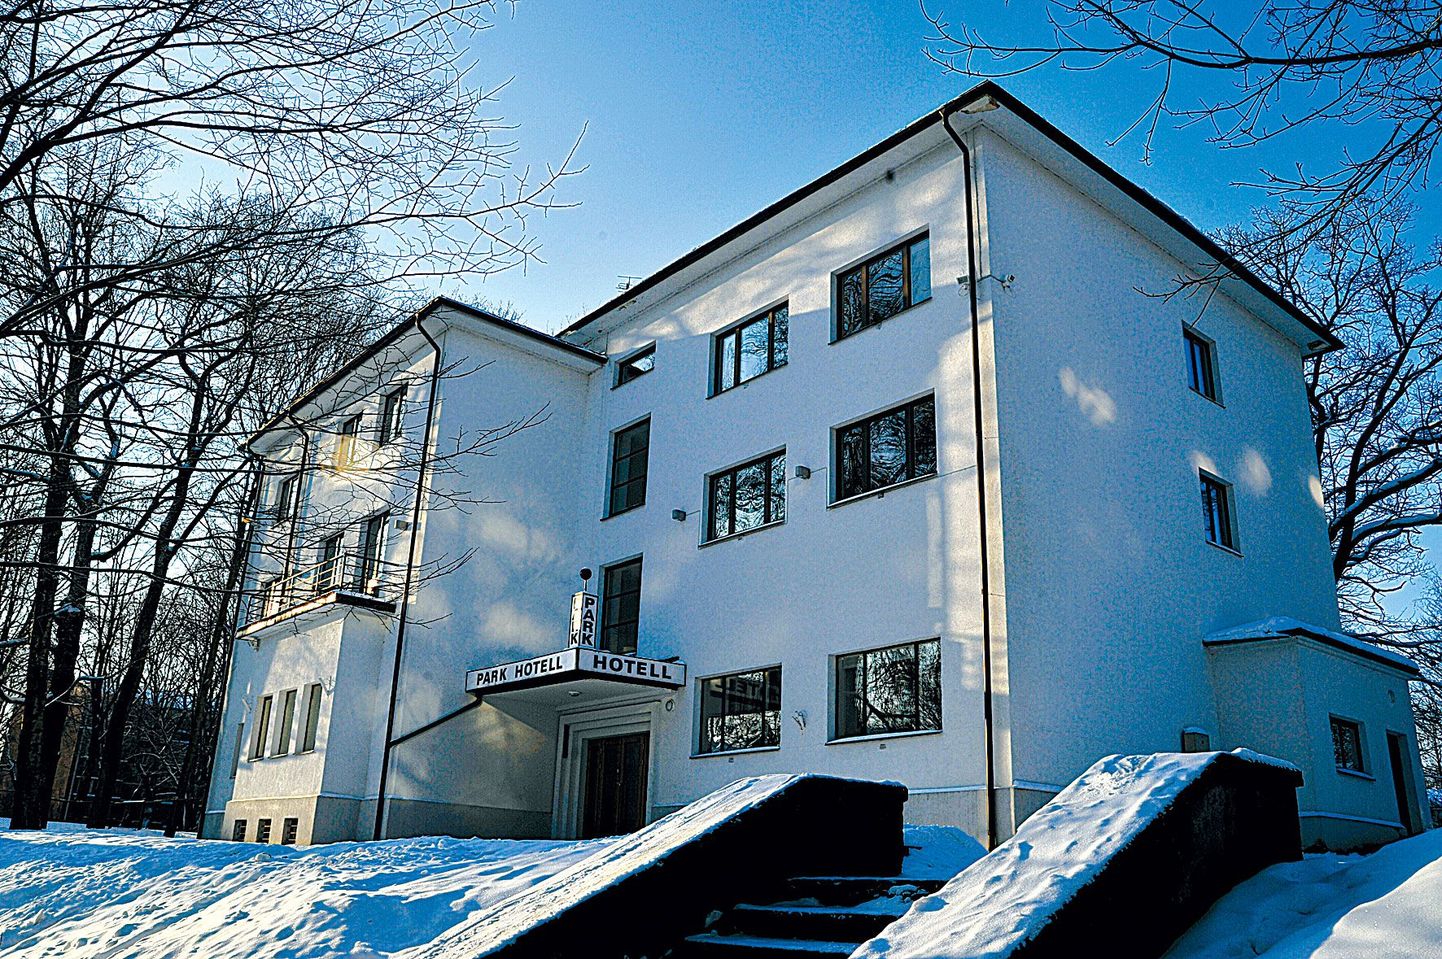 Park-hotelli arhitekt on Tartu linnaarhitekt Arnold 
Matteus, kes sai projekti valmis 1940. aastal. Sõja tõttu venis ehitus 1943. aastani. Majas asub Tartu vanim ja kuulsusrikkaim hotell.